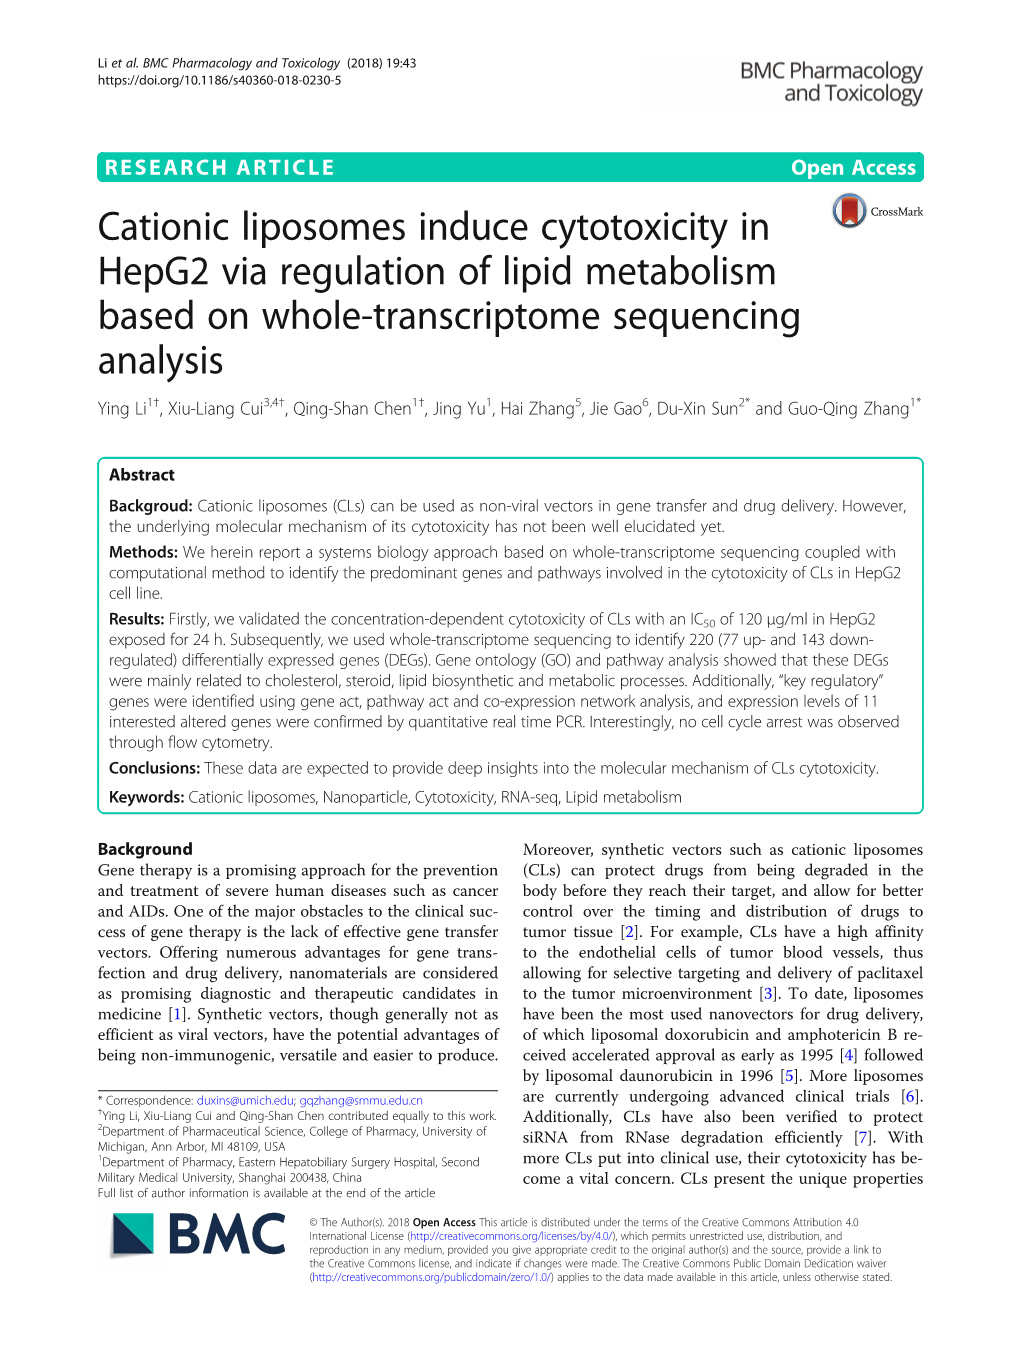 Cationic Liposomes Induce Cytotoxicity in Hepg2 Via Regulation of Lipid